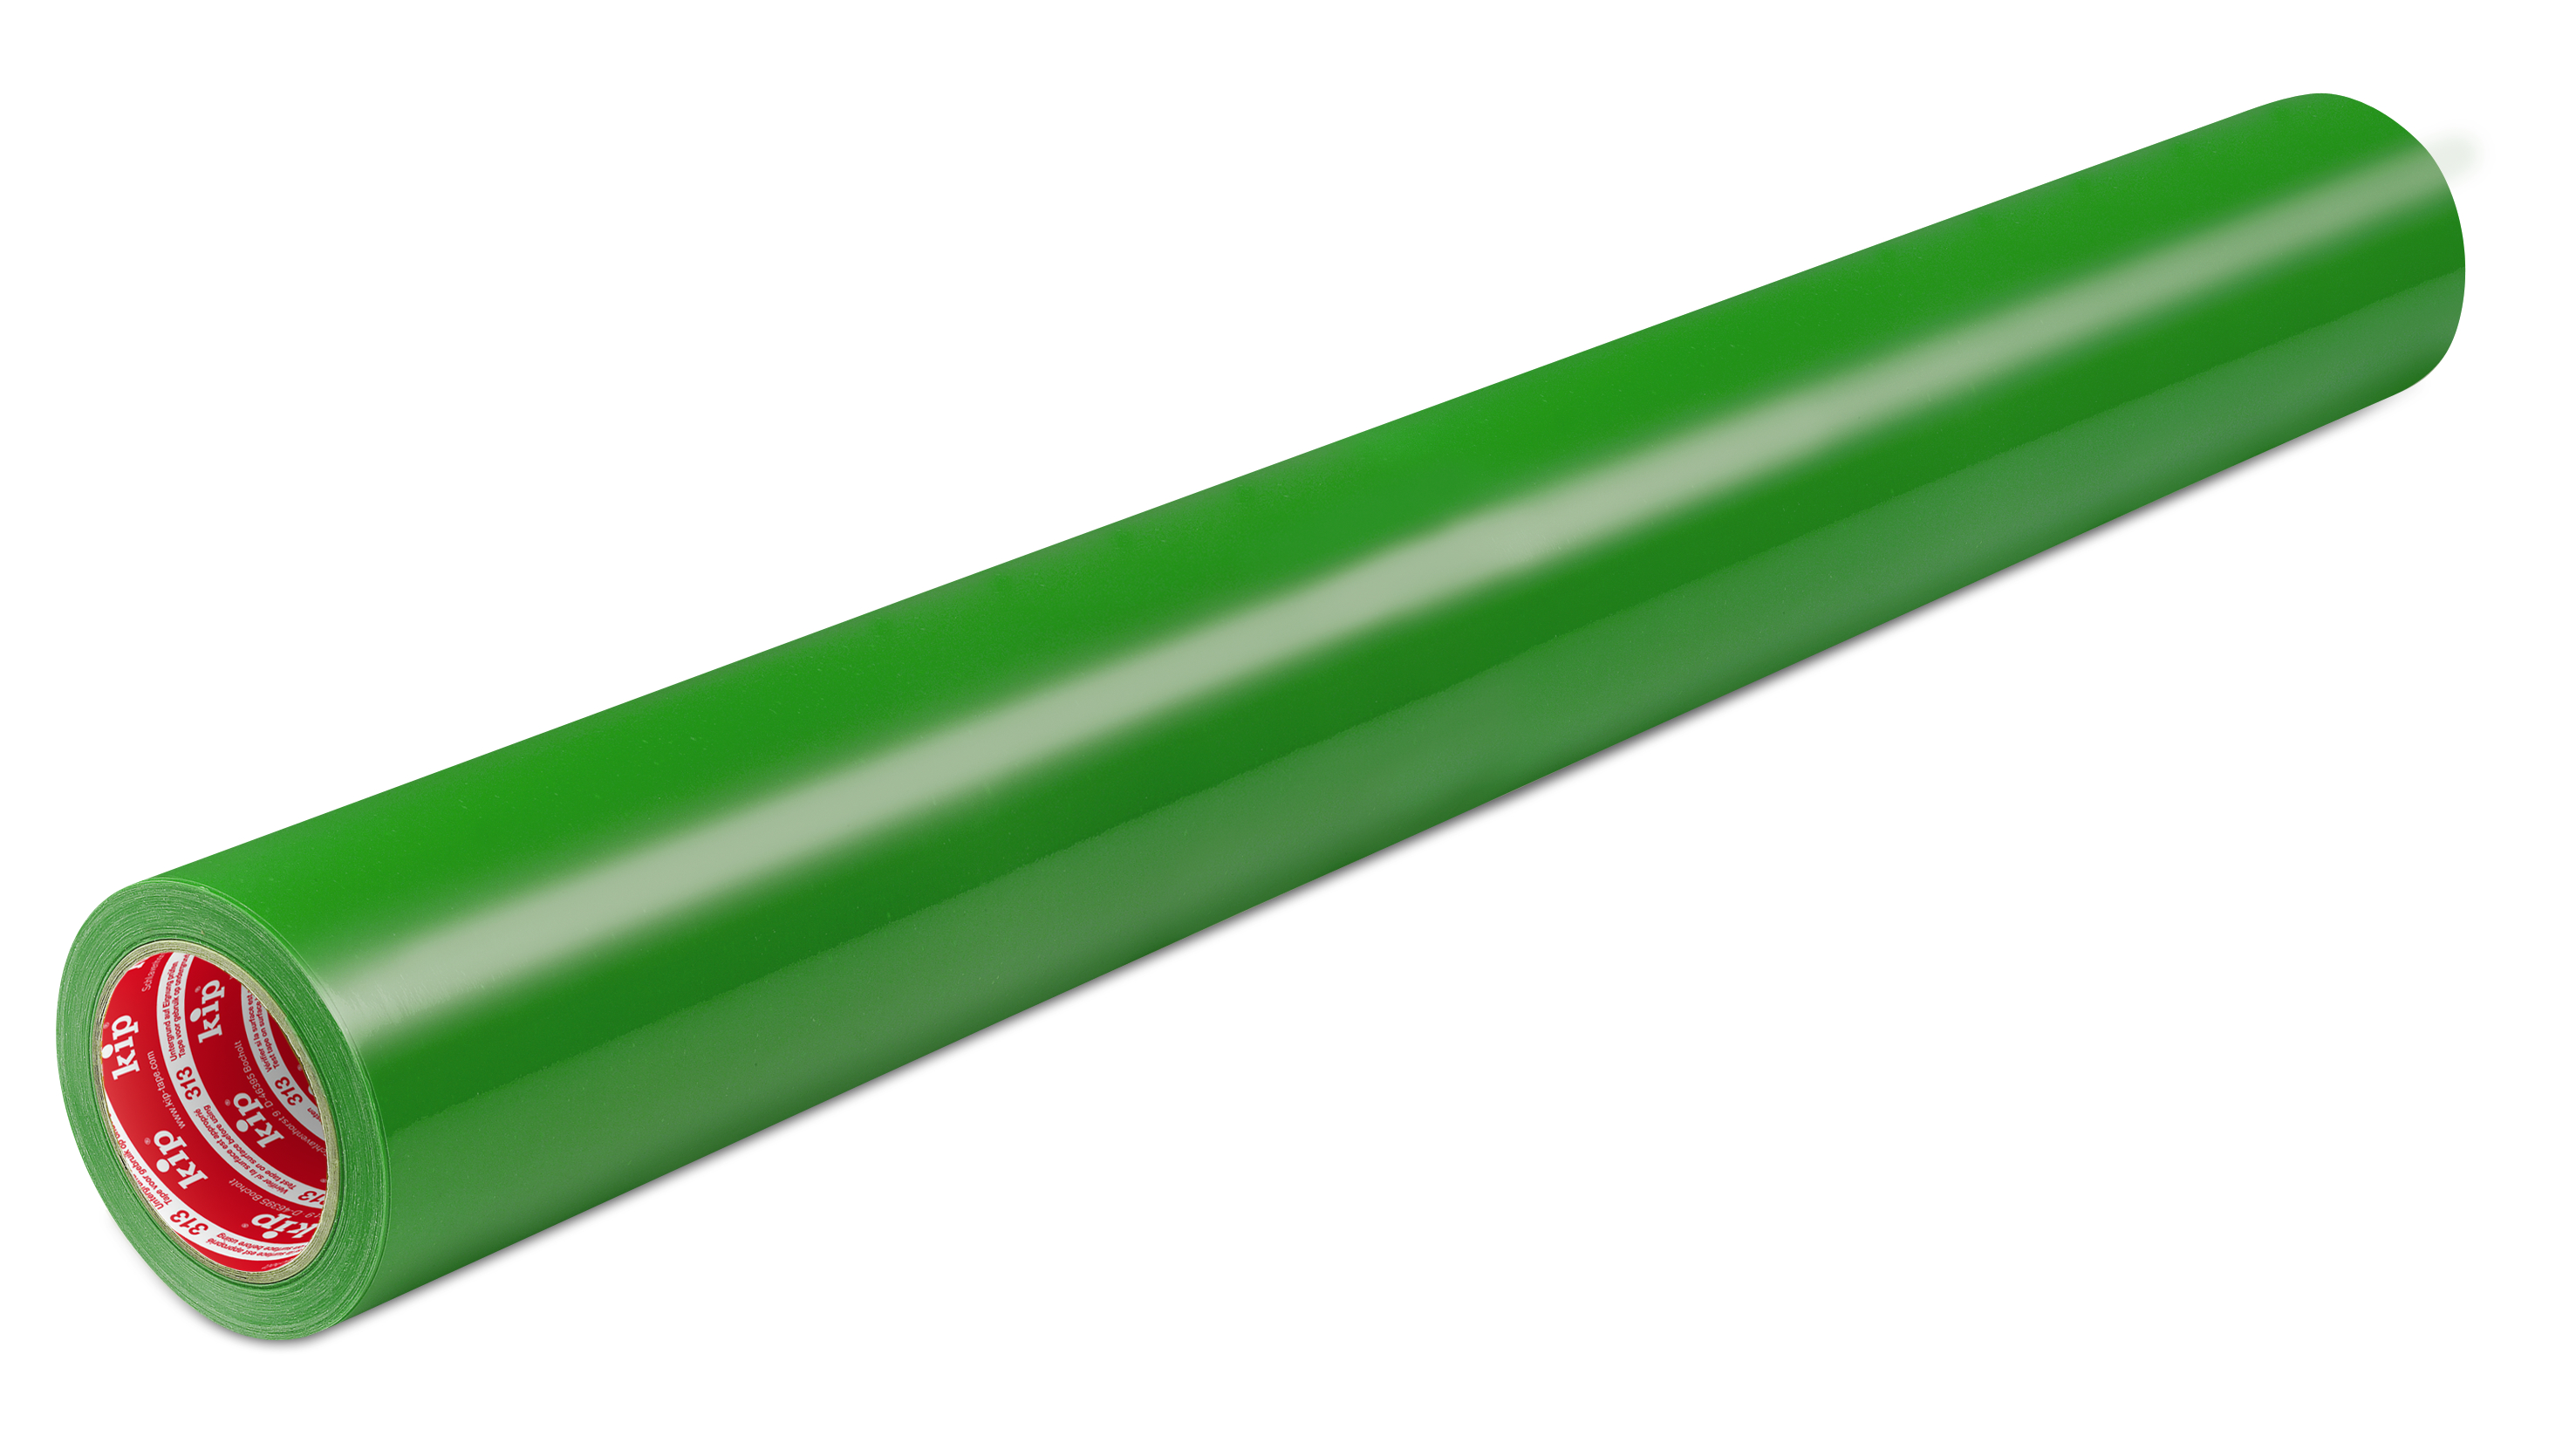 Schutzfolie grün 1000mm 100m Typ313